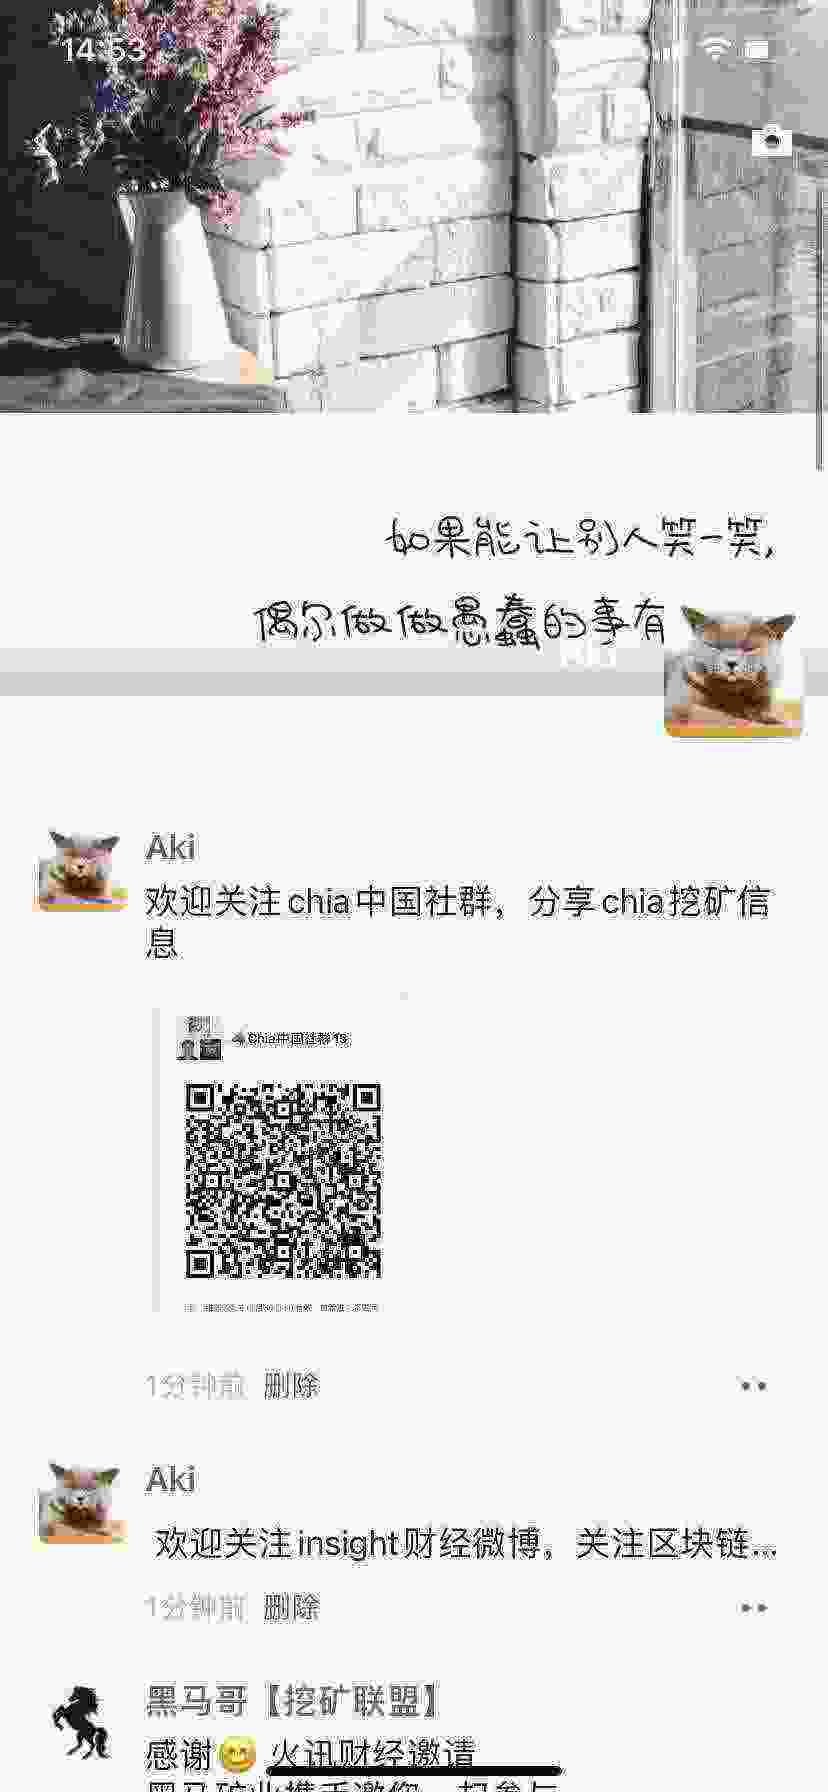 WeChat Image_20210423145432.jpg